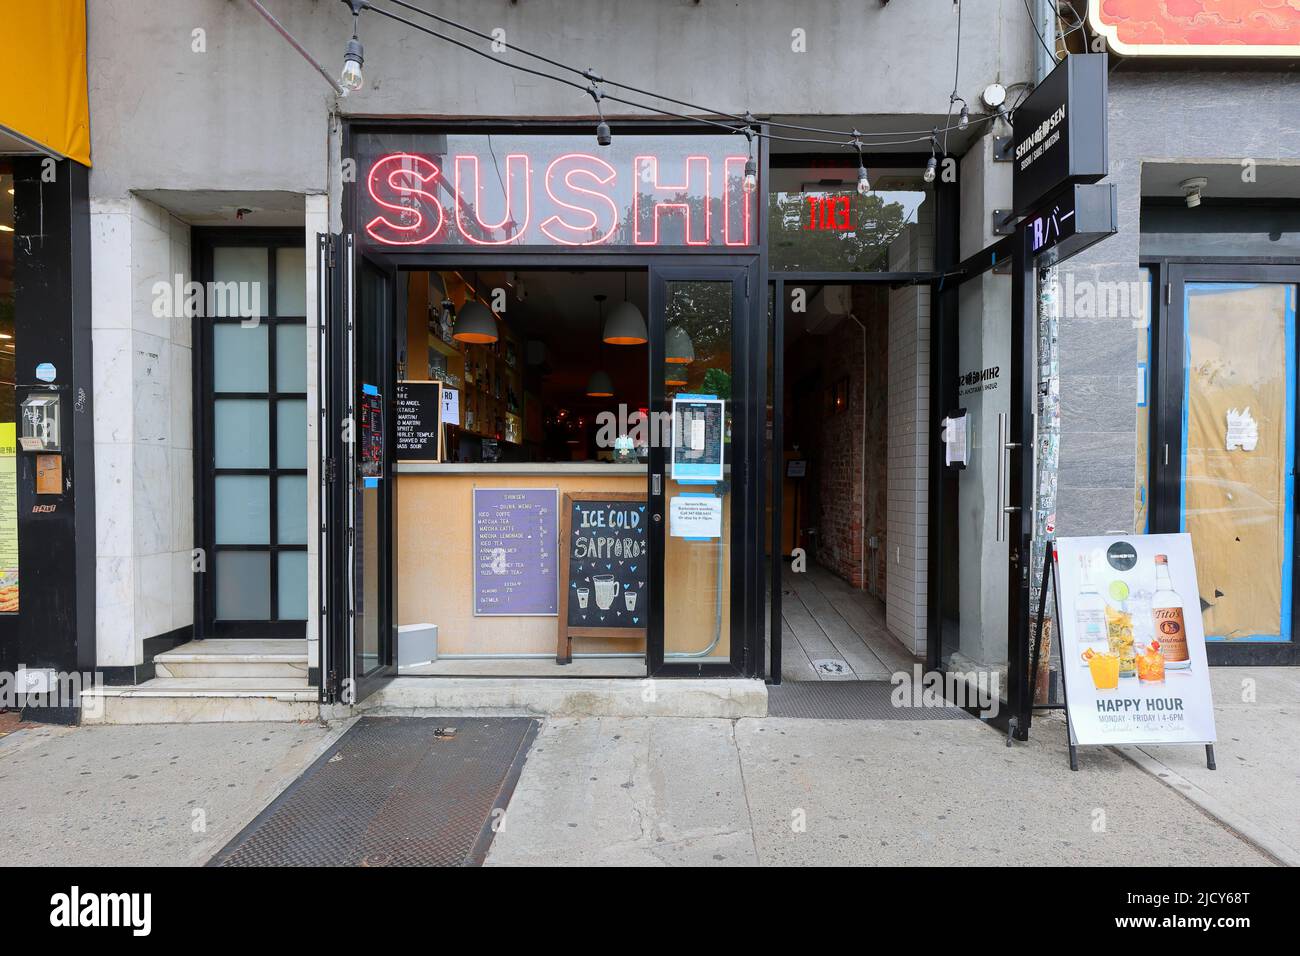 Shinsen 新鮮すし, 44 Bowery, New York, NYC Foto von einem Sushi-Restaurant und einer Sake Lounge in Manhattan, Chinatown. Stockfoto